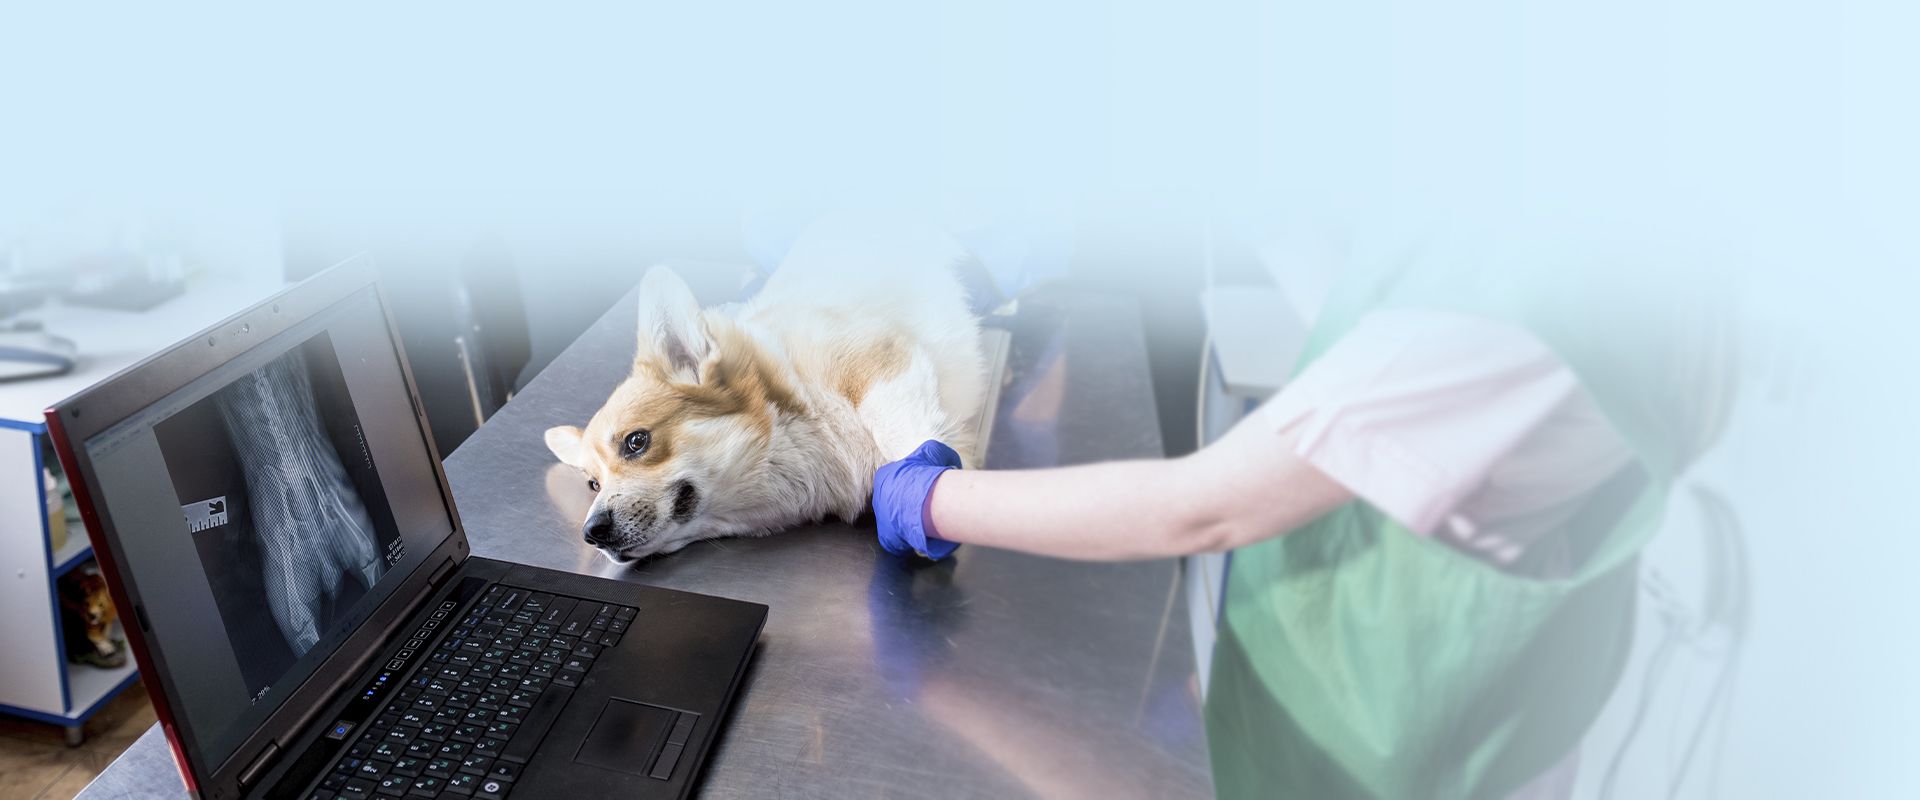 veterinarian examining a corgi dog in a x-ray room